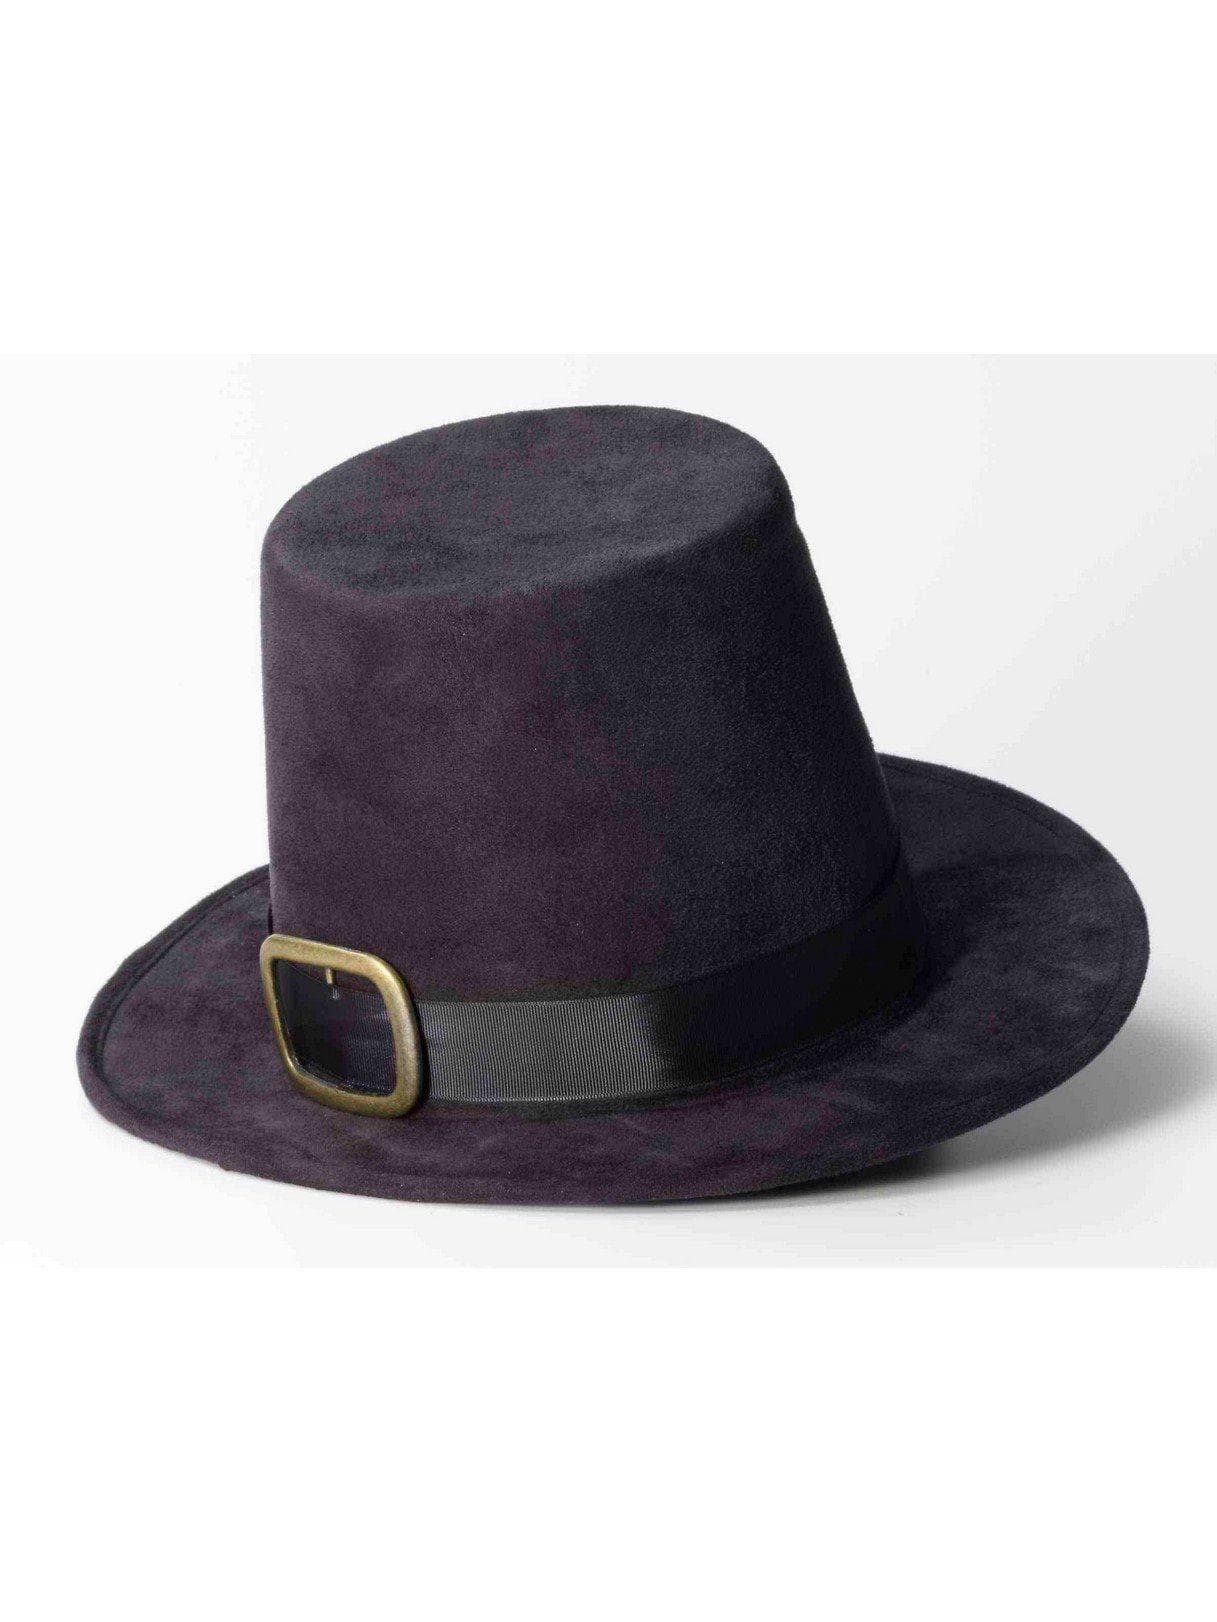 Deluxe Pilgrim Hat Accessory - costumes.com